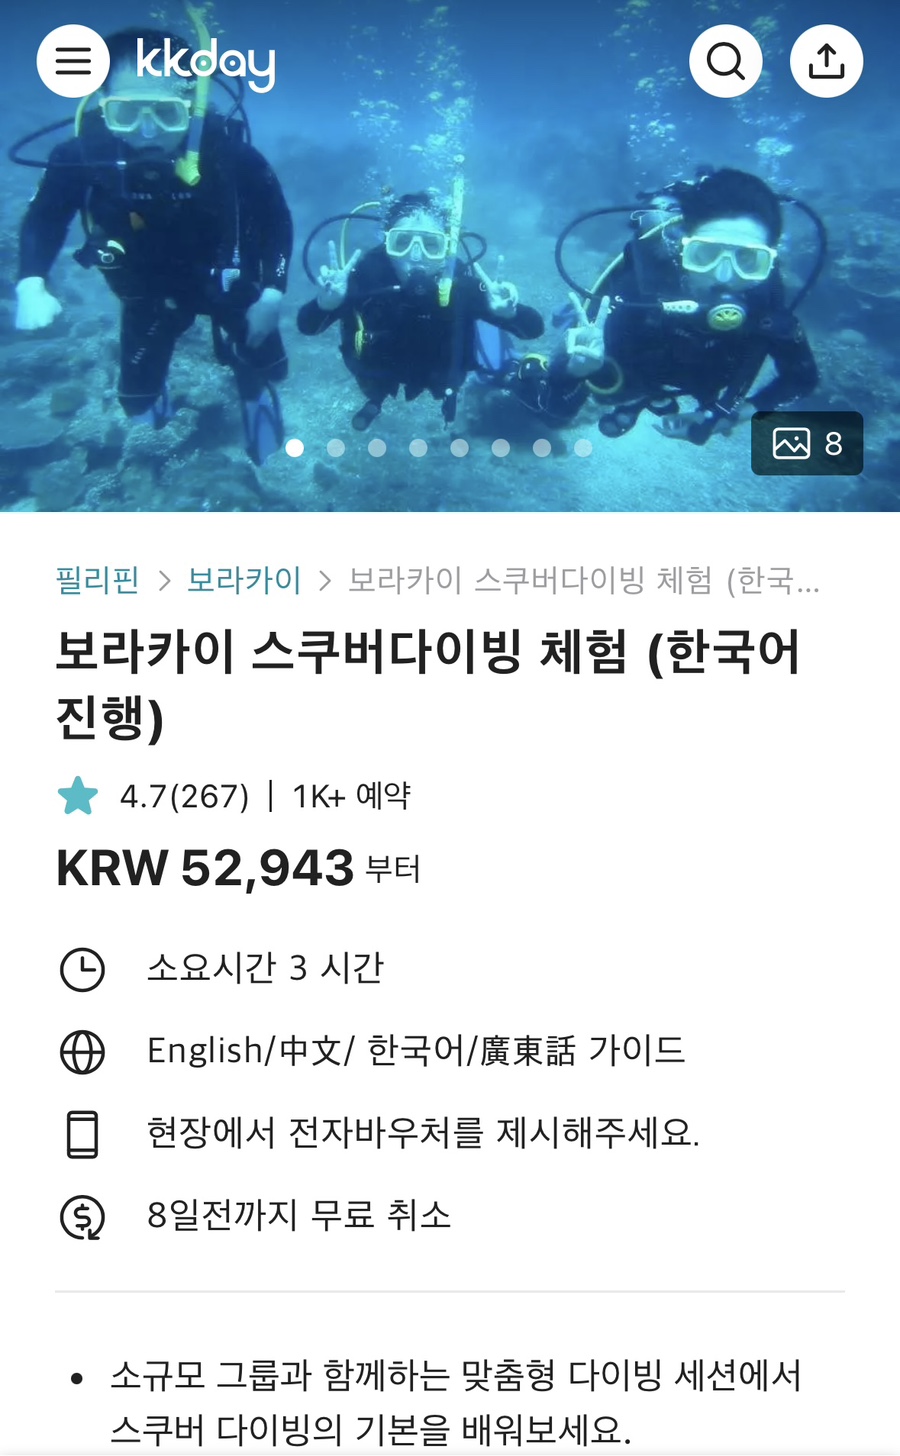 보라카이 여행 보라카이 자유여행 스쿠버다이빙 체험 한국어 진행